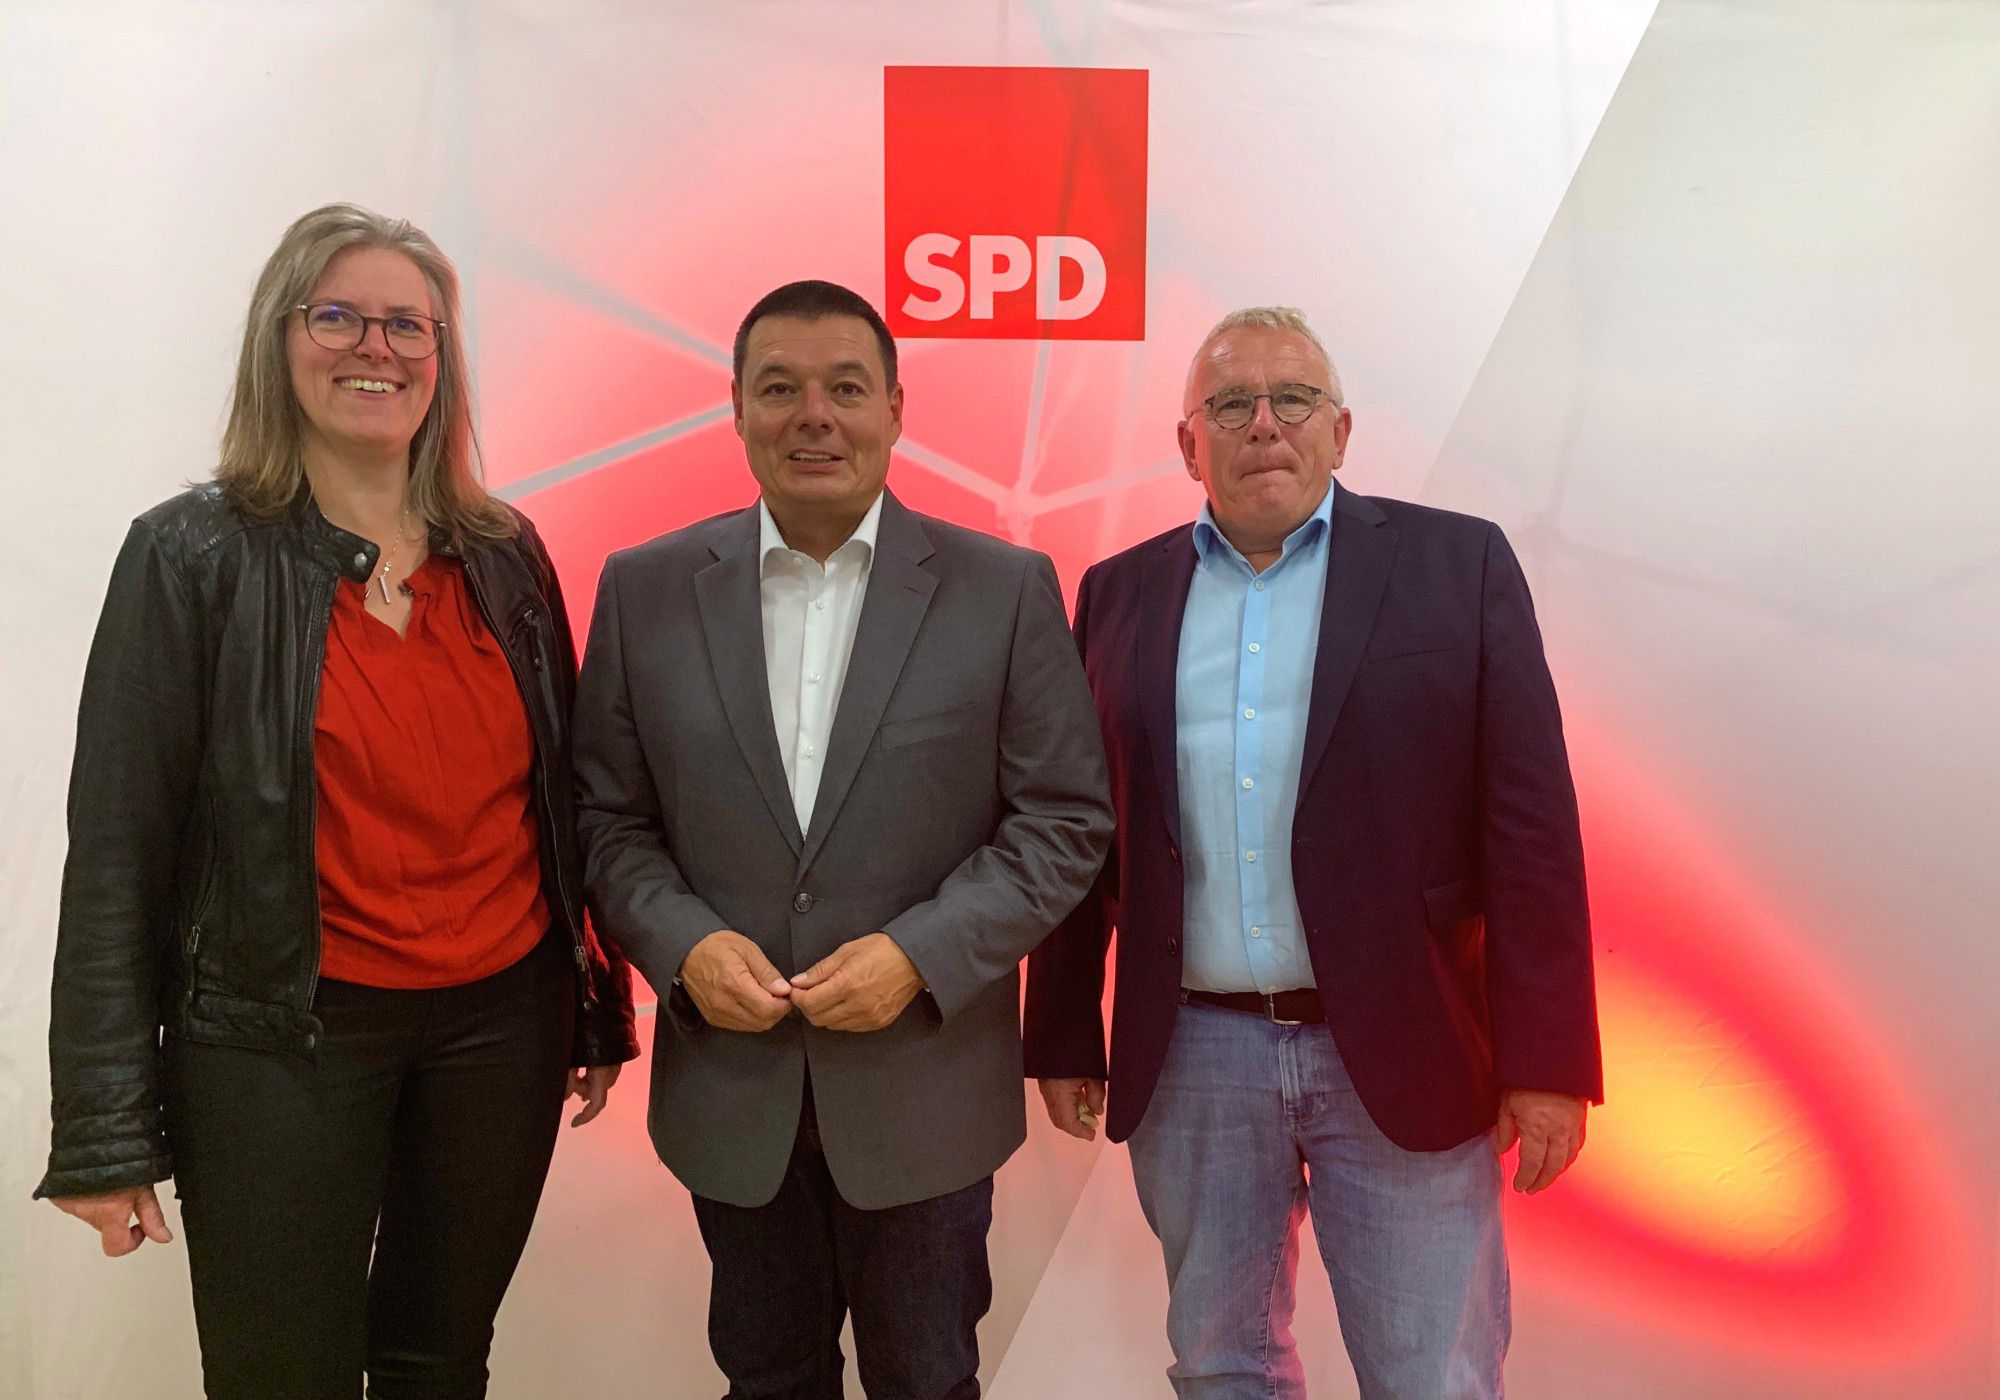 Die SPD-Mitglieder haben Peter Wehlack (M.) einstimmig als Bürgermeisterkandidaten nominiert. Das Foto zeigt Peter Wehlack mit hier mit der Ortsvereinsvorsitzenden Heike Bartmann-Scherding (l.) und SPD-Fraktionschef Michael Klimziak. (Foto: privat)